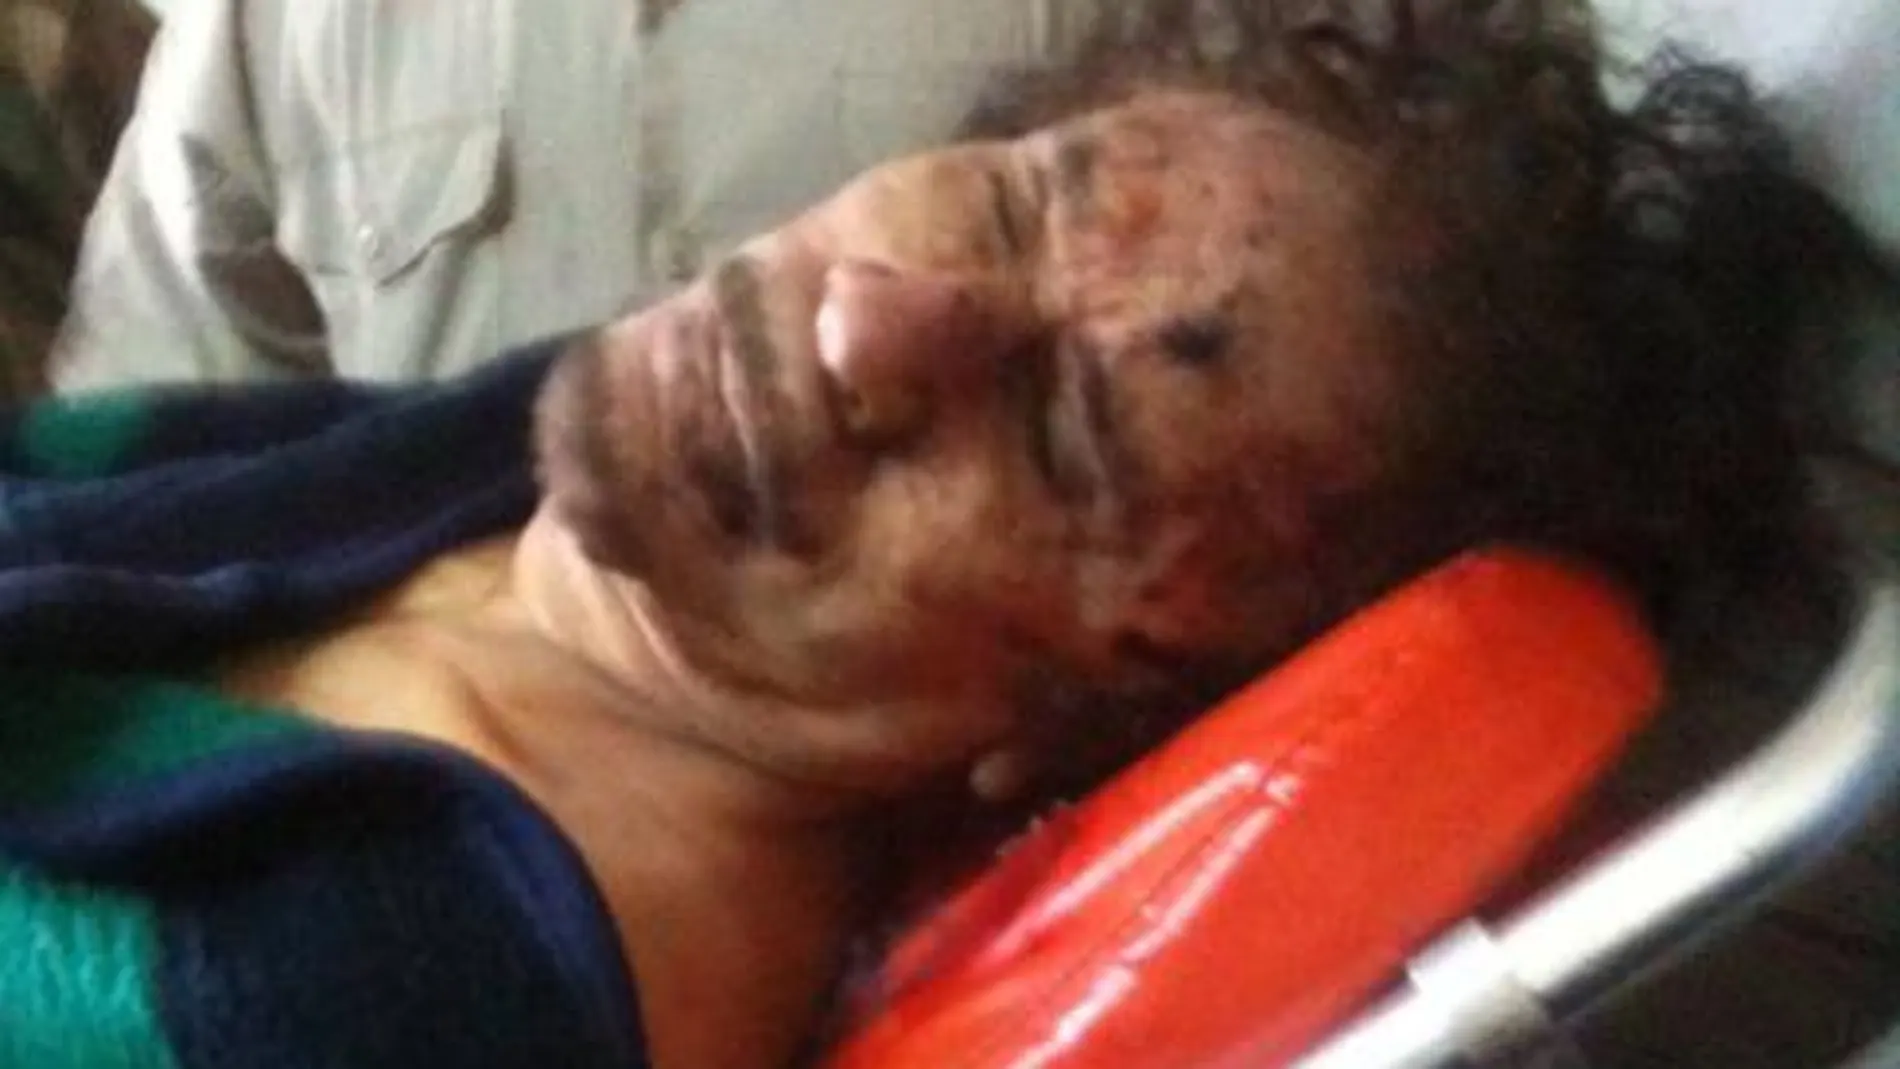 En misrata El cadáver de Gadafi permanece en una cámara frigorífica de la ciudad rebelde